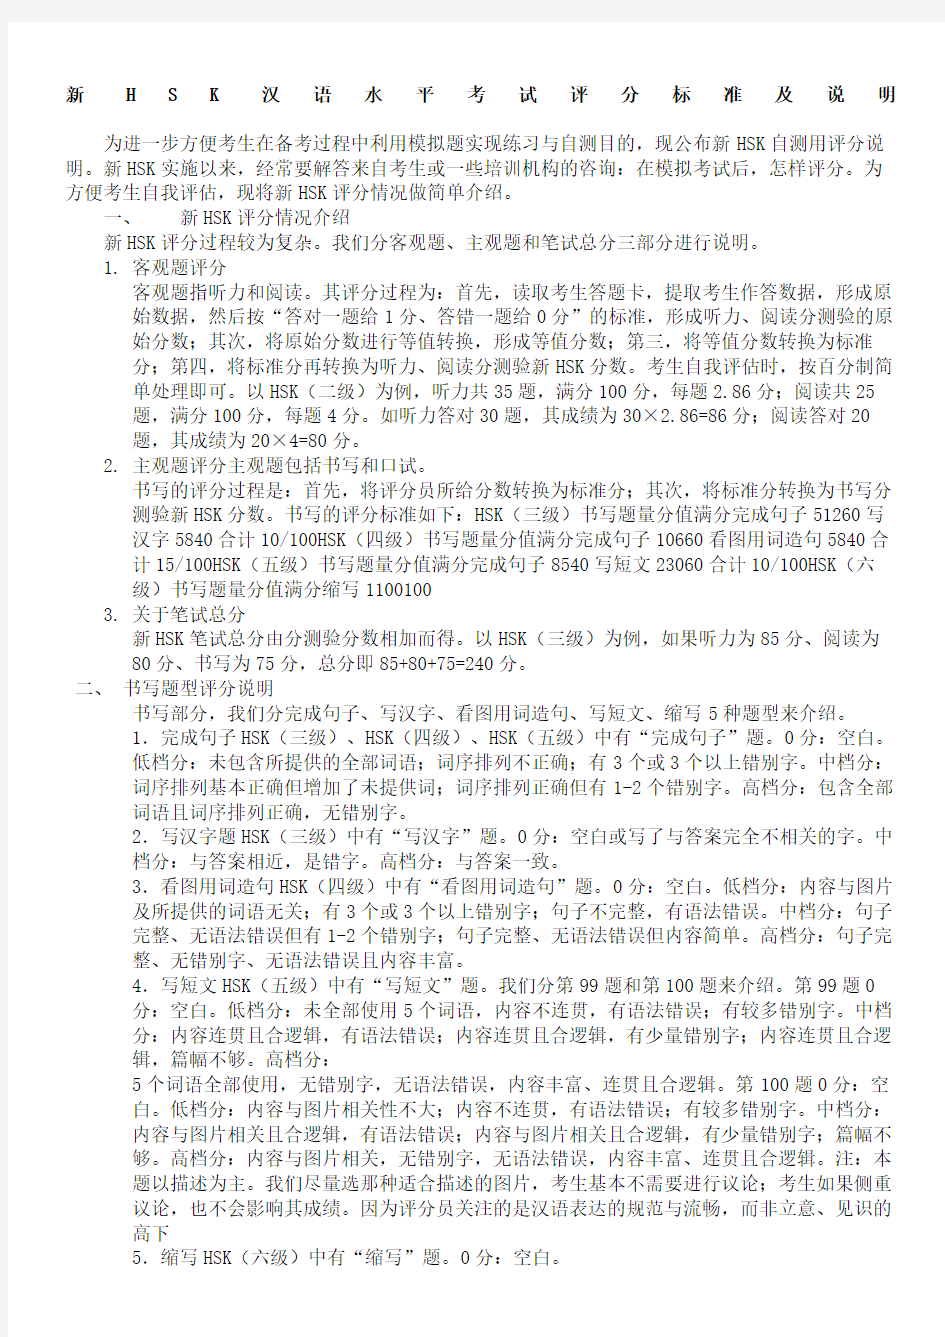 新HSK汉语水平考试评分标准及说明